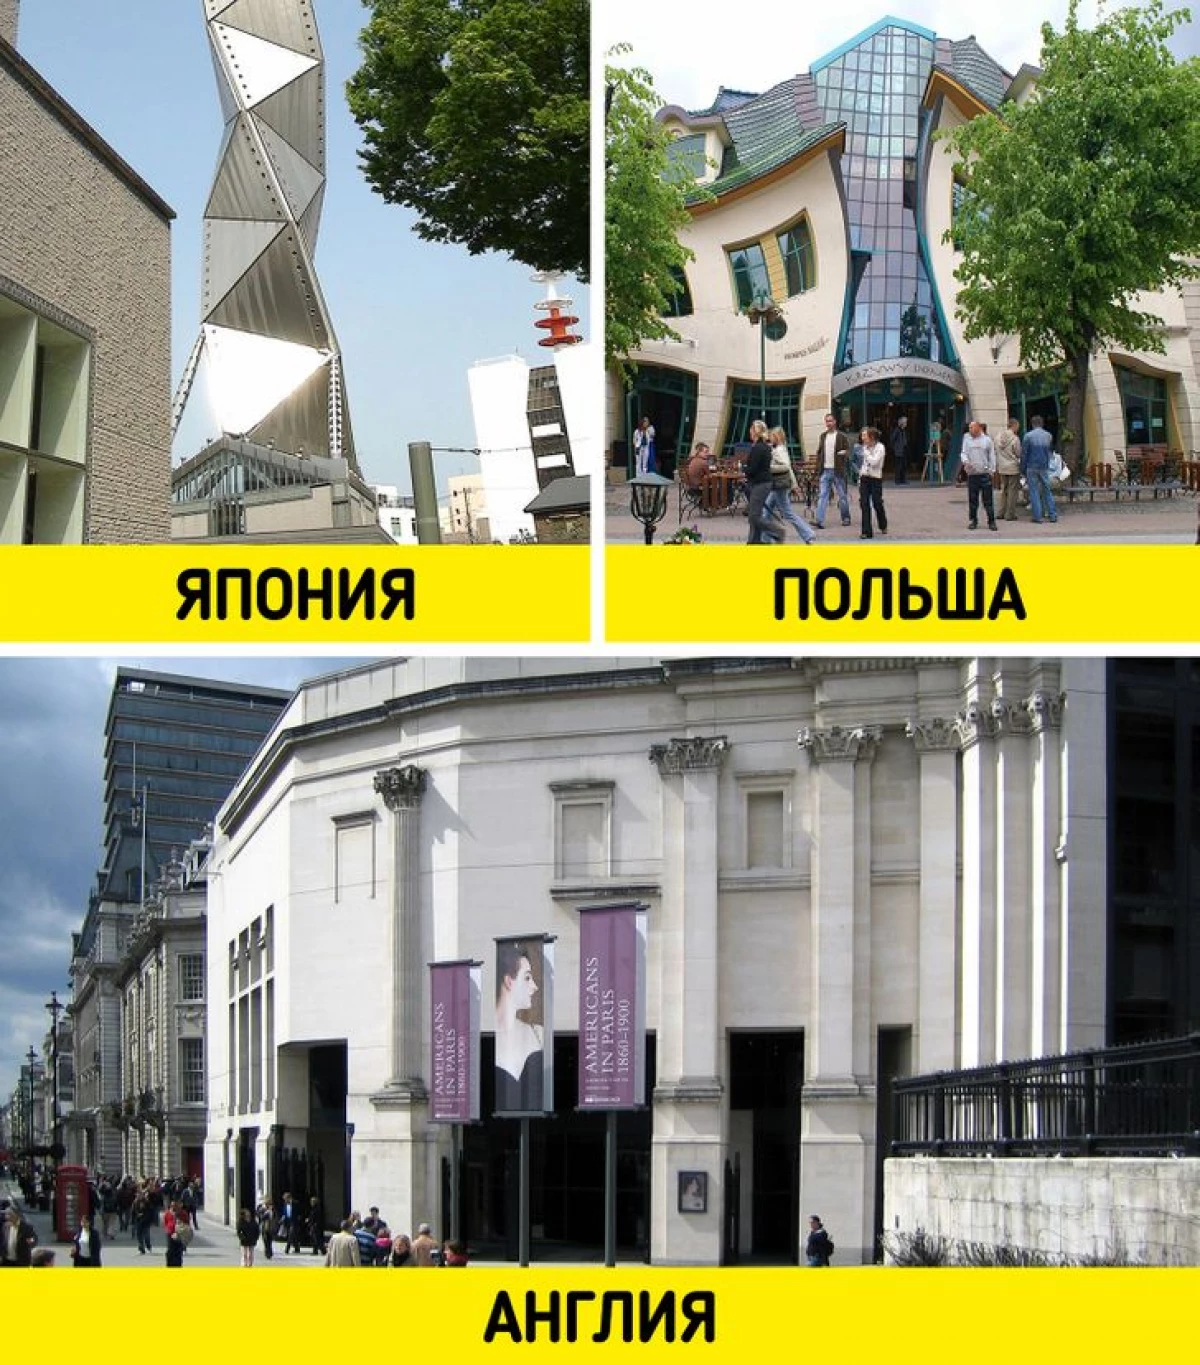 6 styles architecturaux traditionnels que dans différents pays ont l'air complètement différent 1748_14